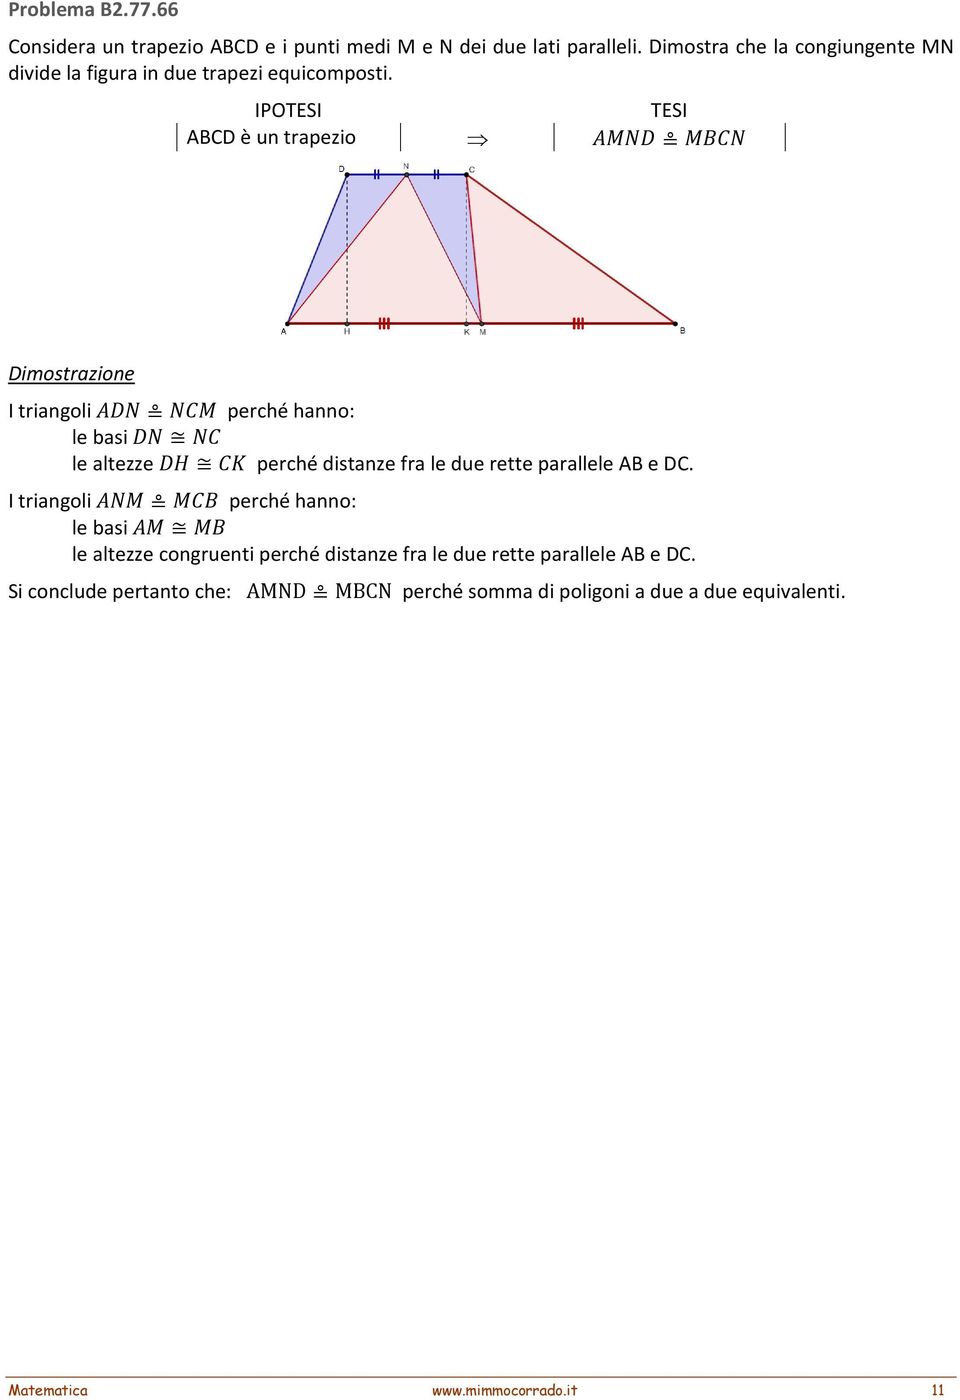 ABCD è un trapezio I triangoli perché hanno: le basi le altezze perché distanze fra le due rette parallele AB e DC.